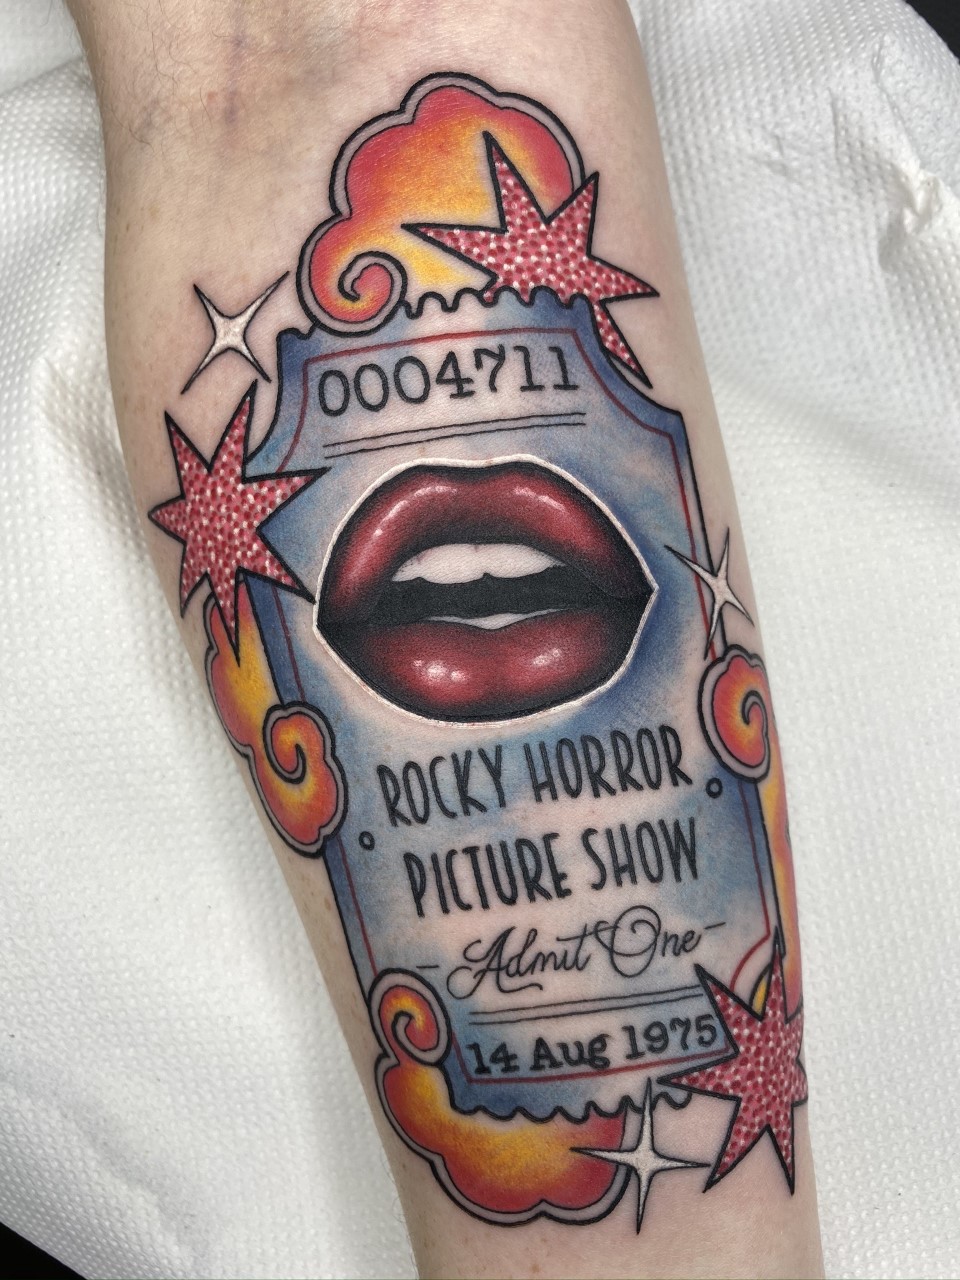 ROCKY HORROR SHOW X8 SET temporary tattoos WATERPROOF LAST 1 WEEK  eBay